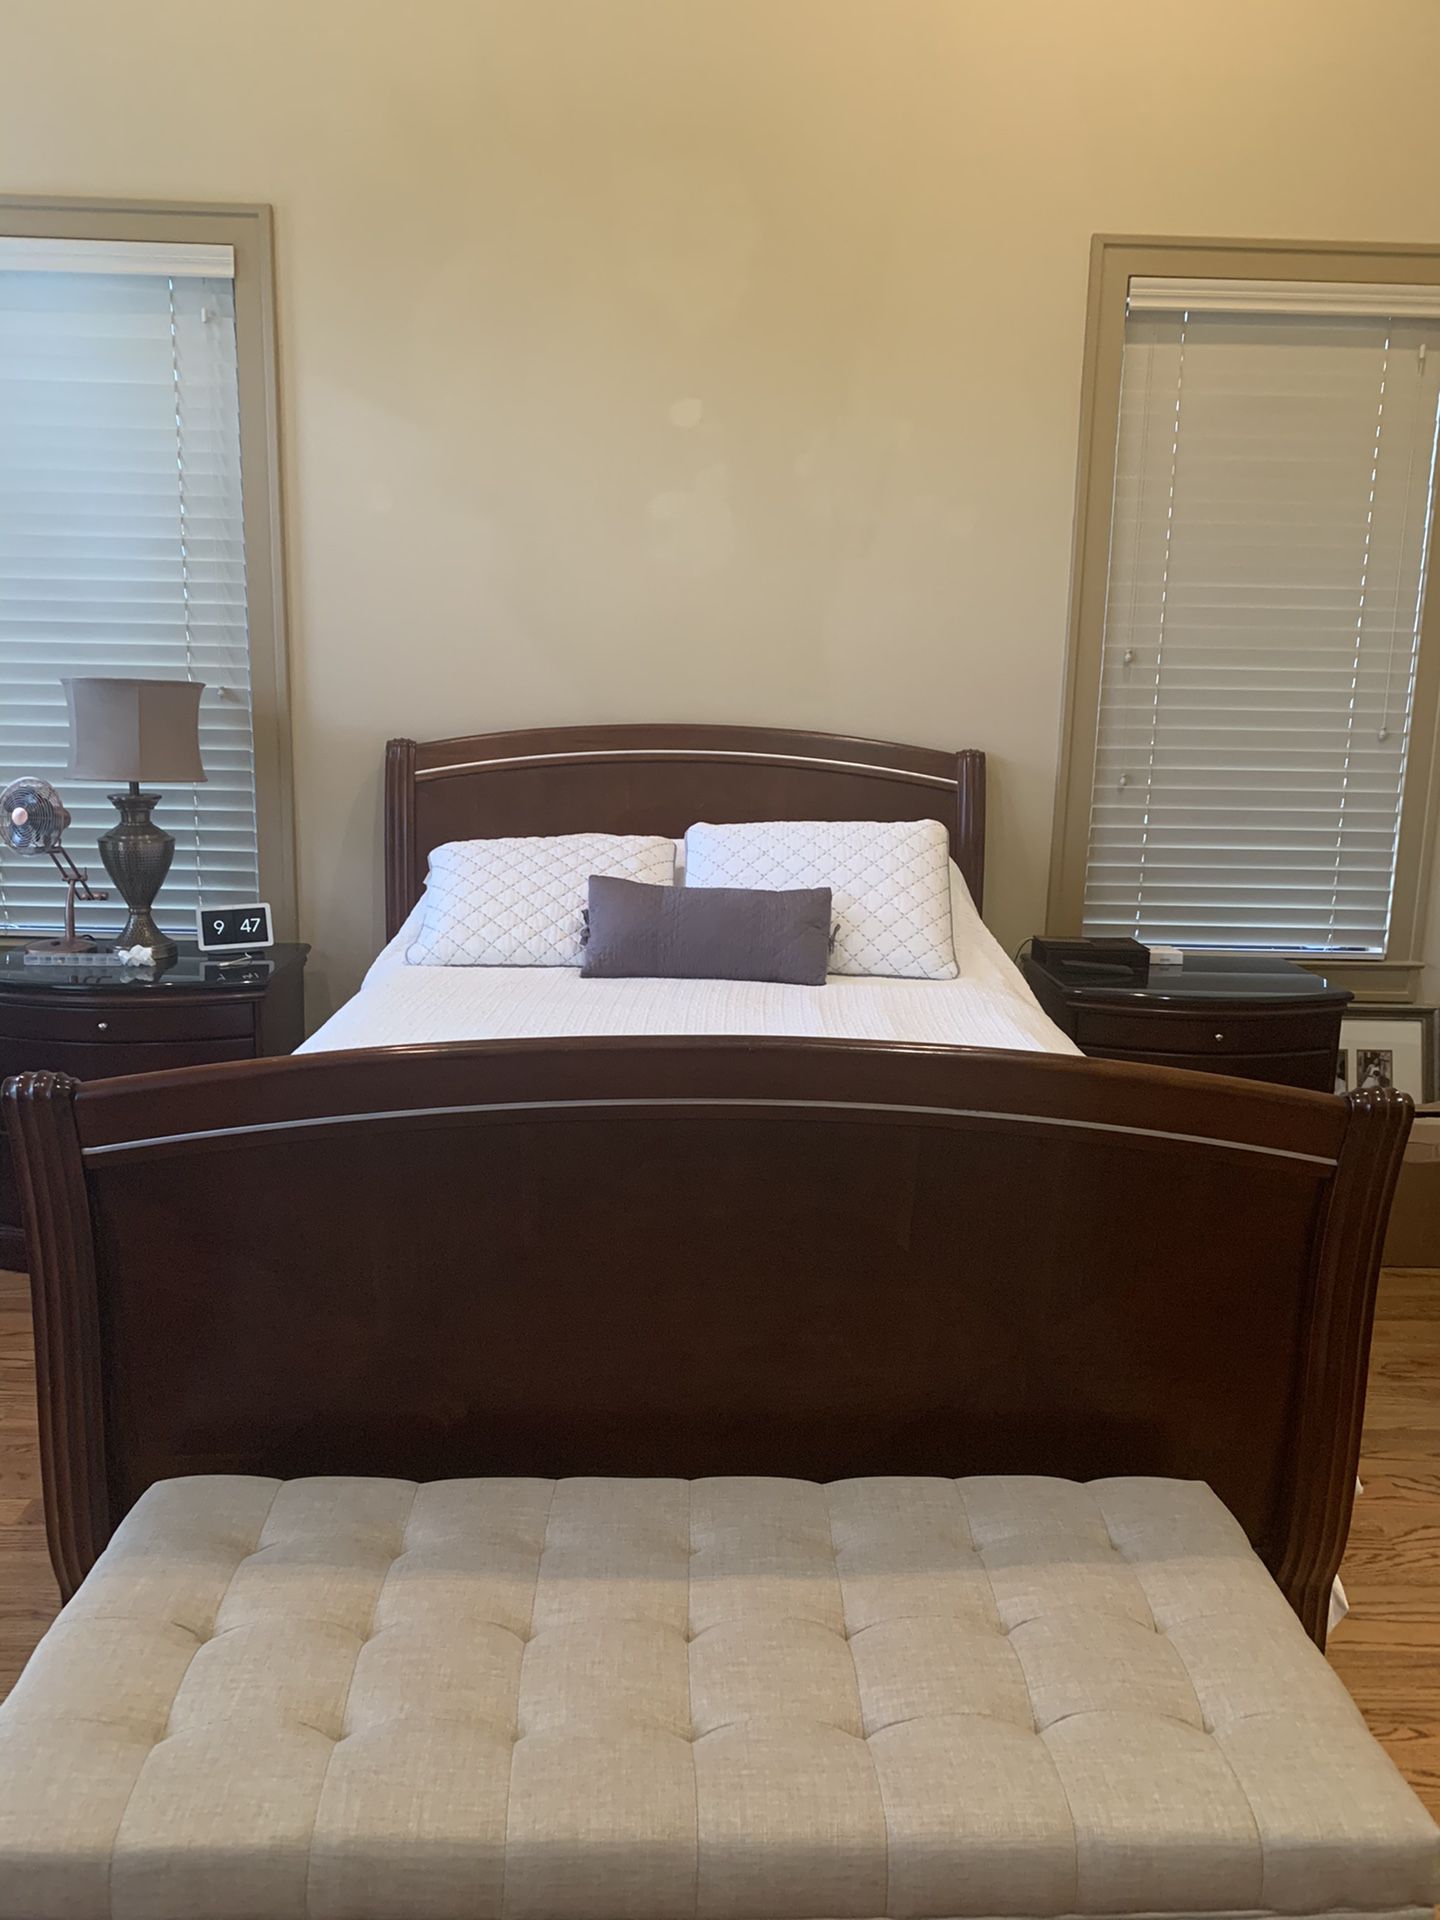 Queen size bedroom set furniture